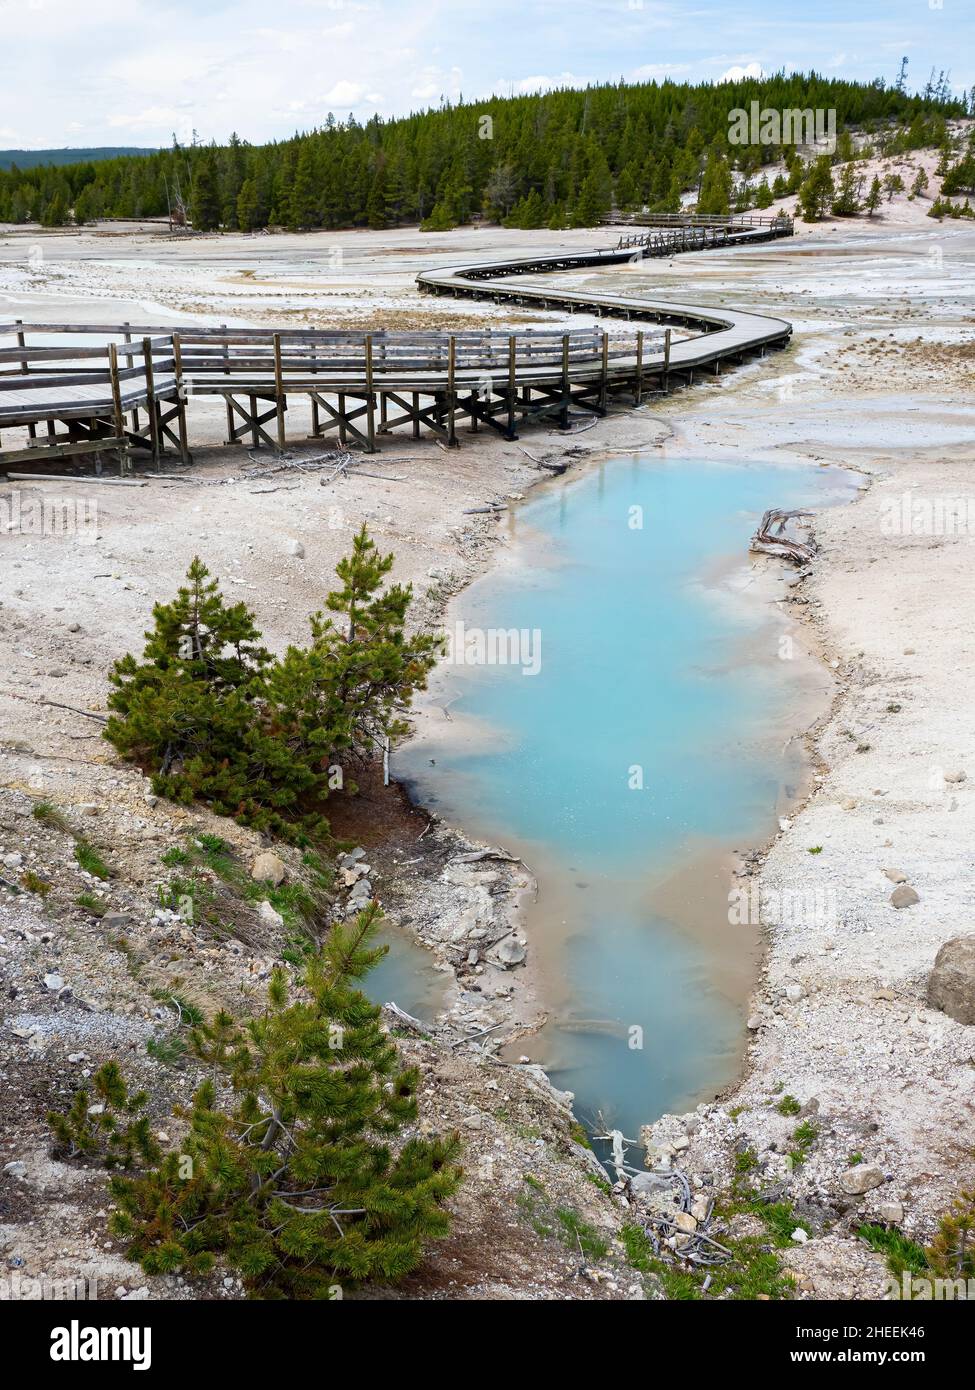 Bassin de porcelaine, dans la région du bassin de Norris Geyser, parc national de Yellowstone, Wyoming, États-Unis. Banque D'Images